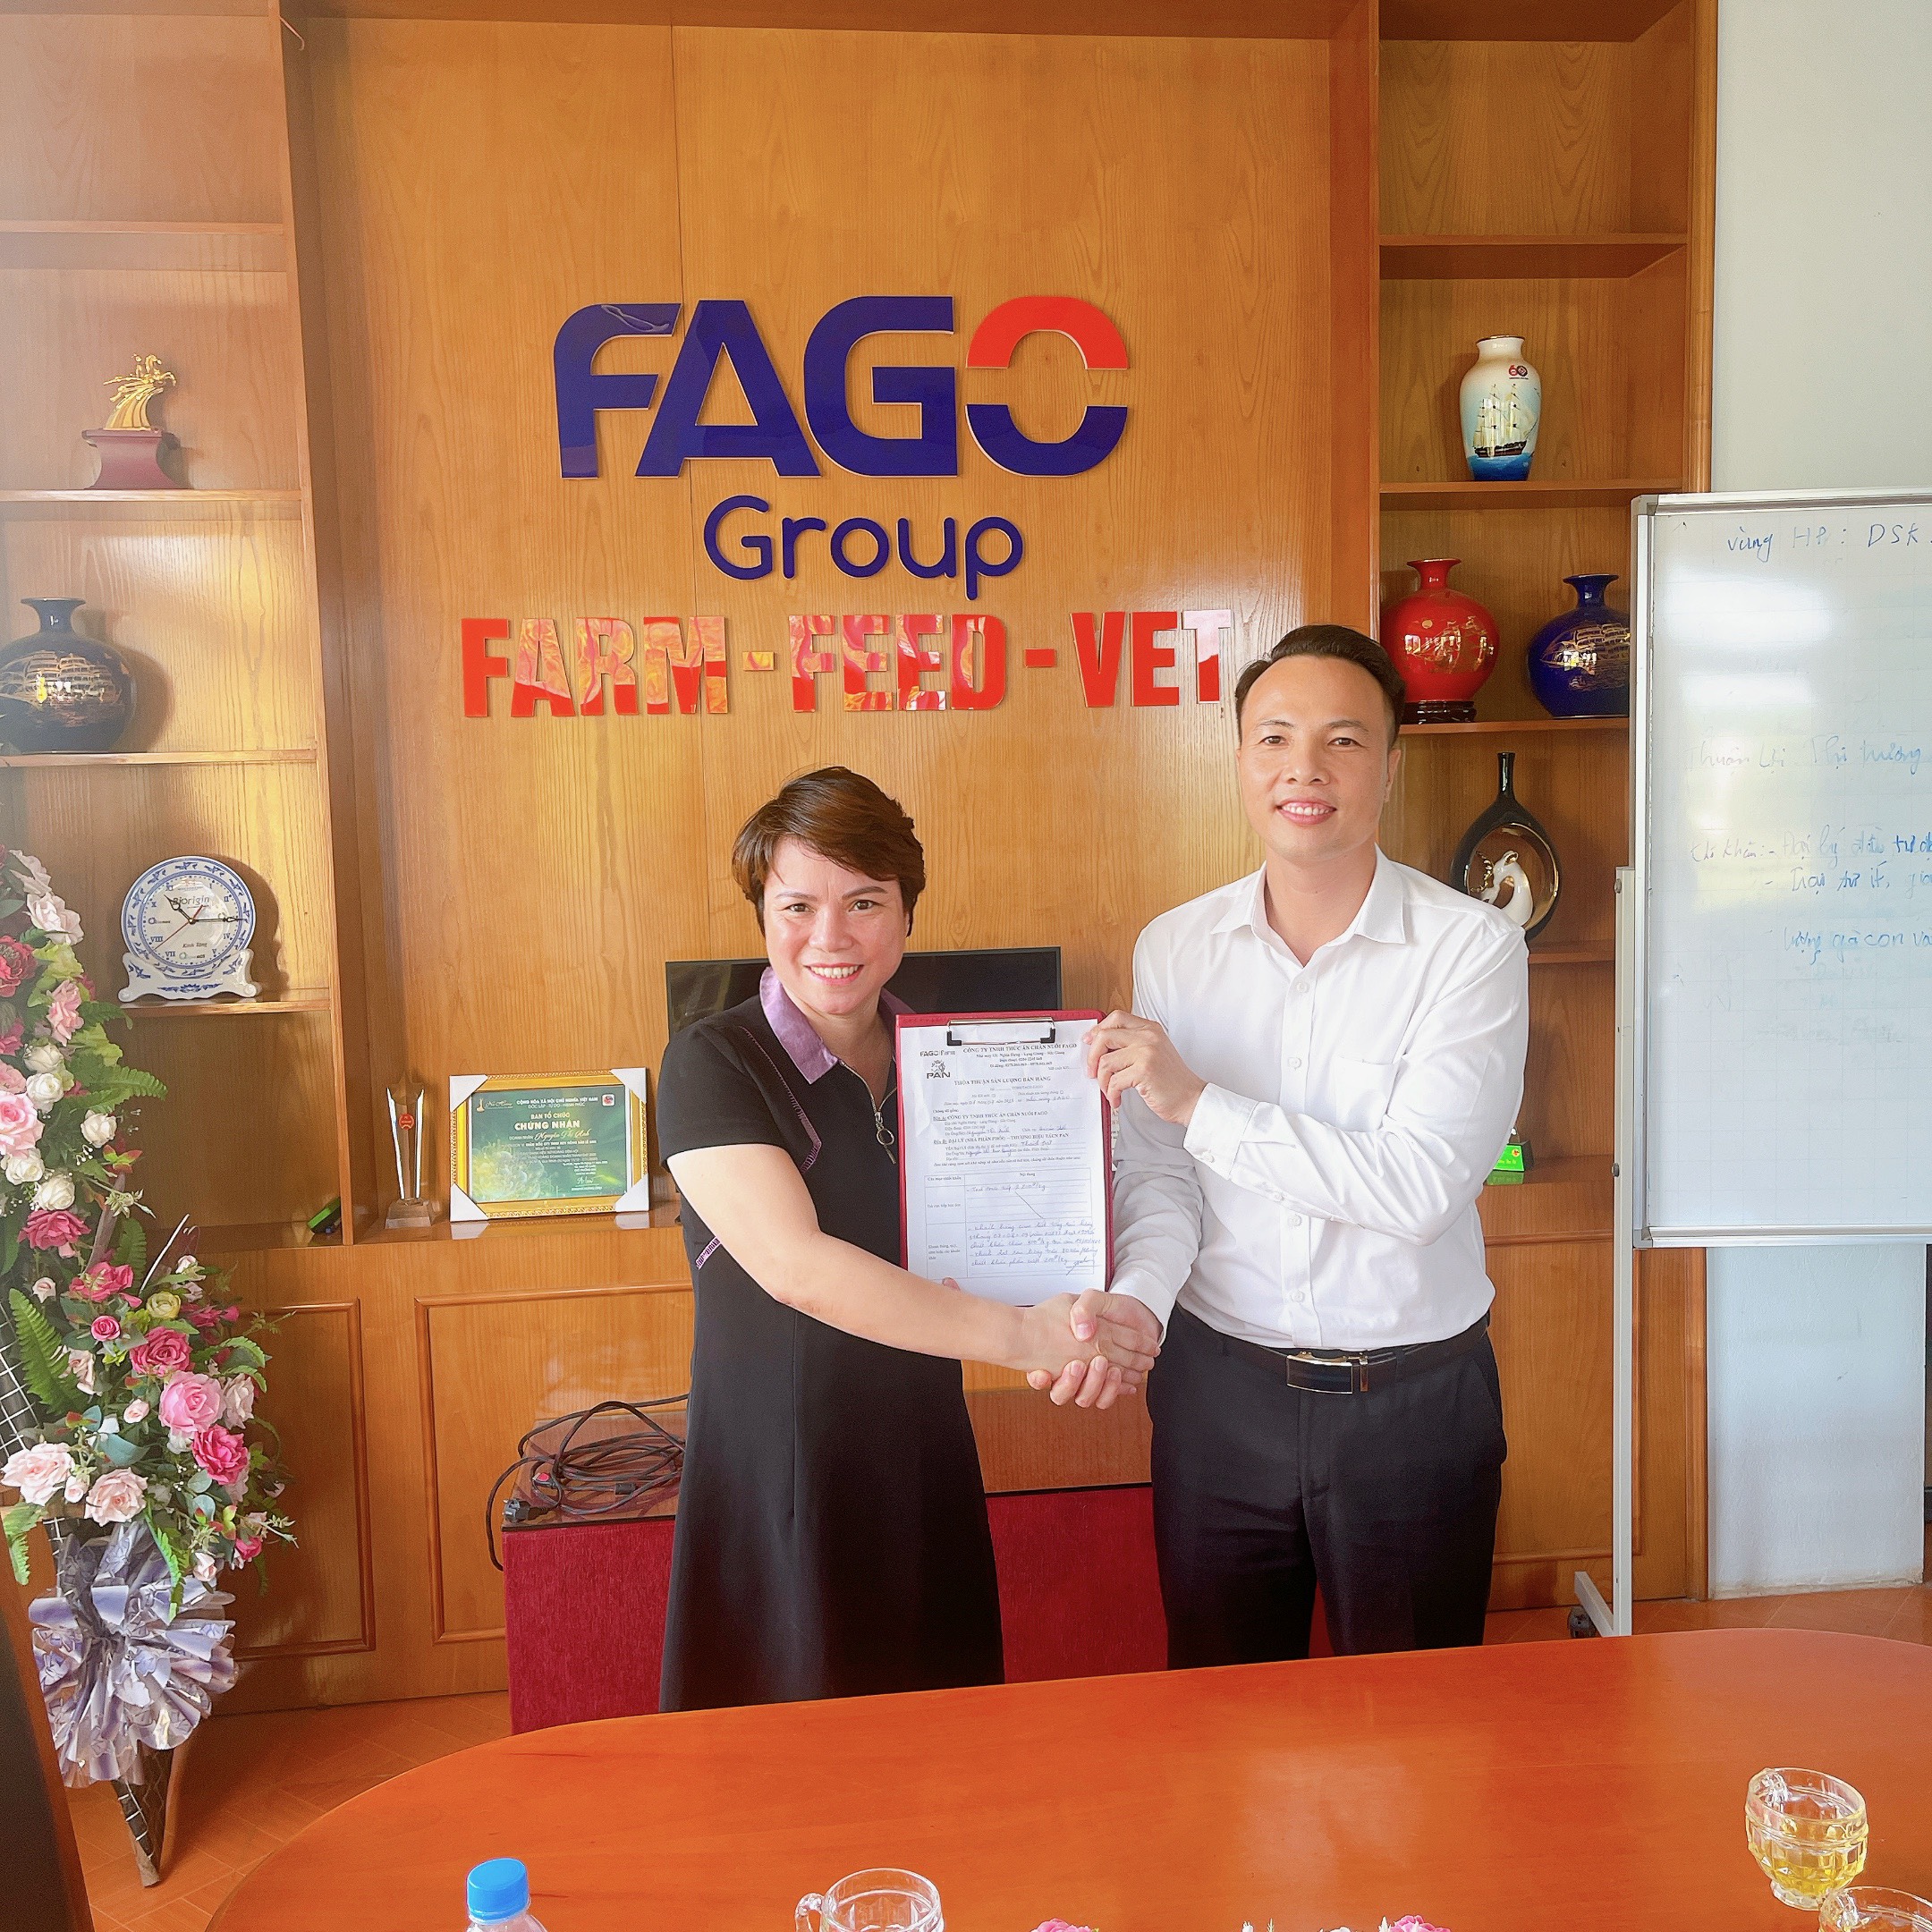 Nguyễn Thị Kim Quý - Đại lý chuyên phân phối thức ăn chăn nuôi Fago ký sản lượng cam kết lớn